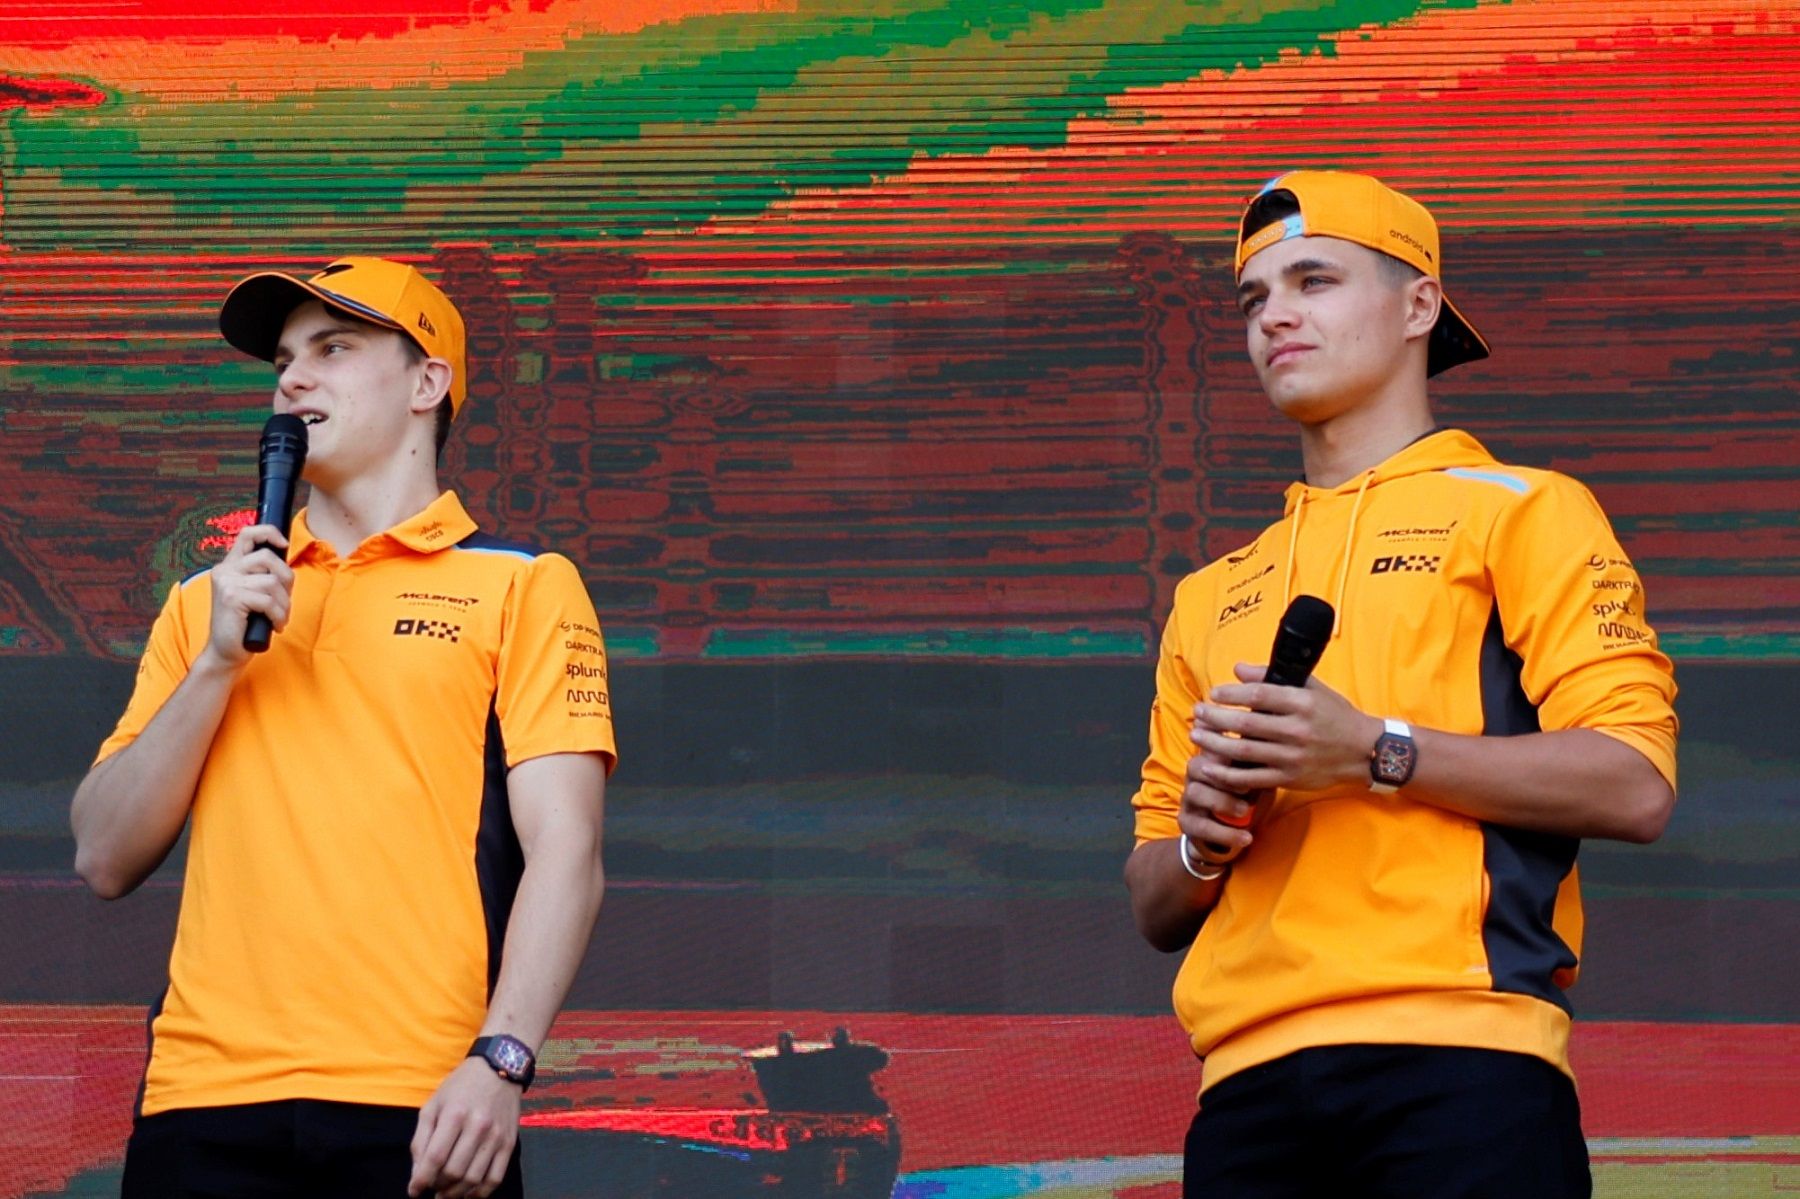 McLaren F1 drivers Lando and Oscar